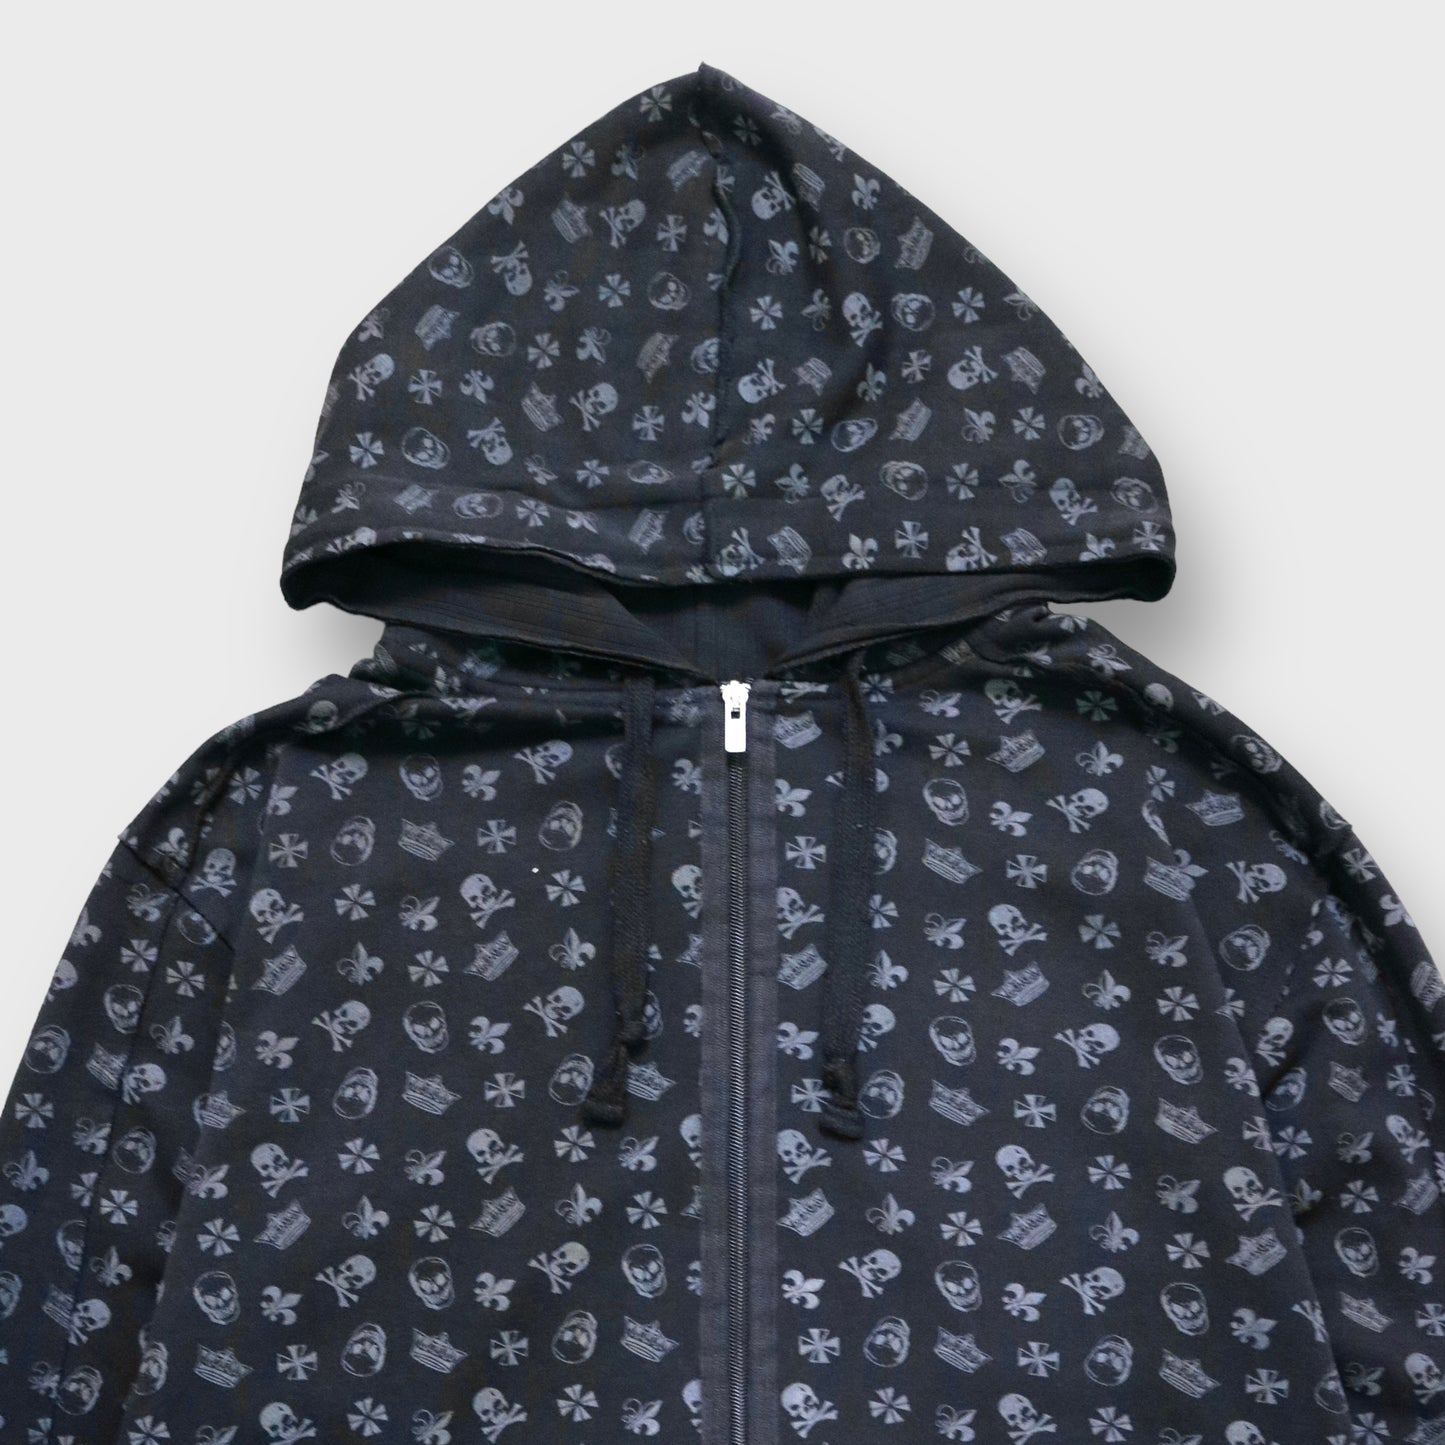 Skull × ornament pattern hoodie